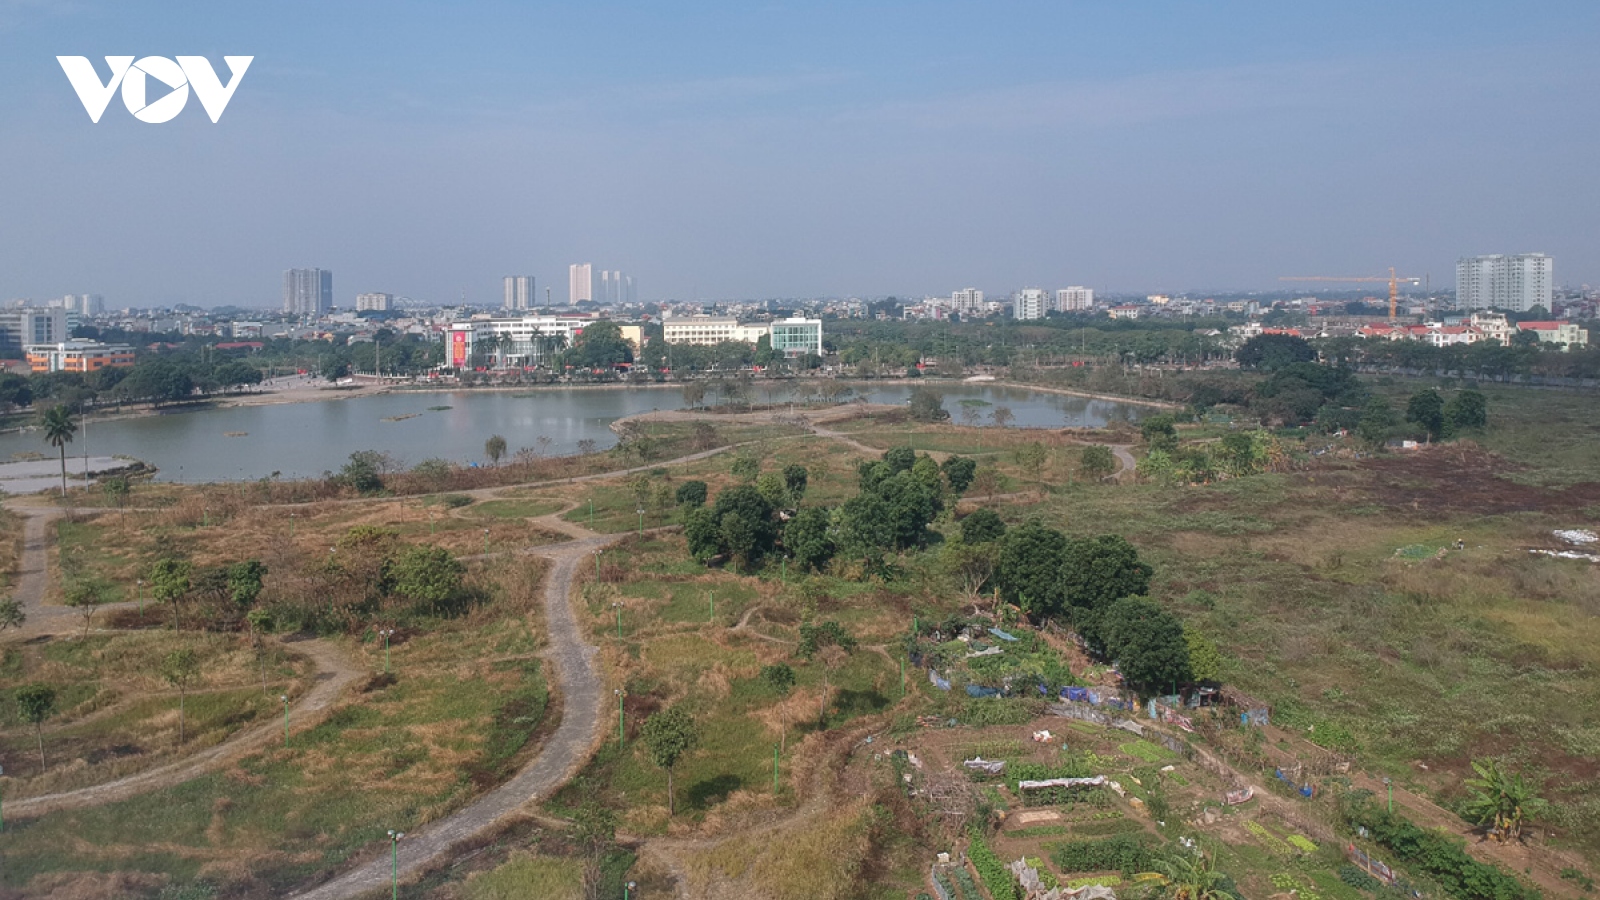 Công viên ở Hà Nội bị bỏ hoang, xuống cấp biến thành vườn rau giữa khu đô thị Việt Hưng